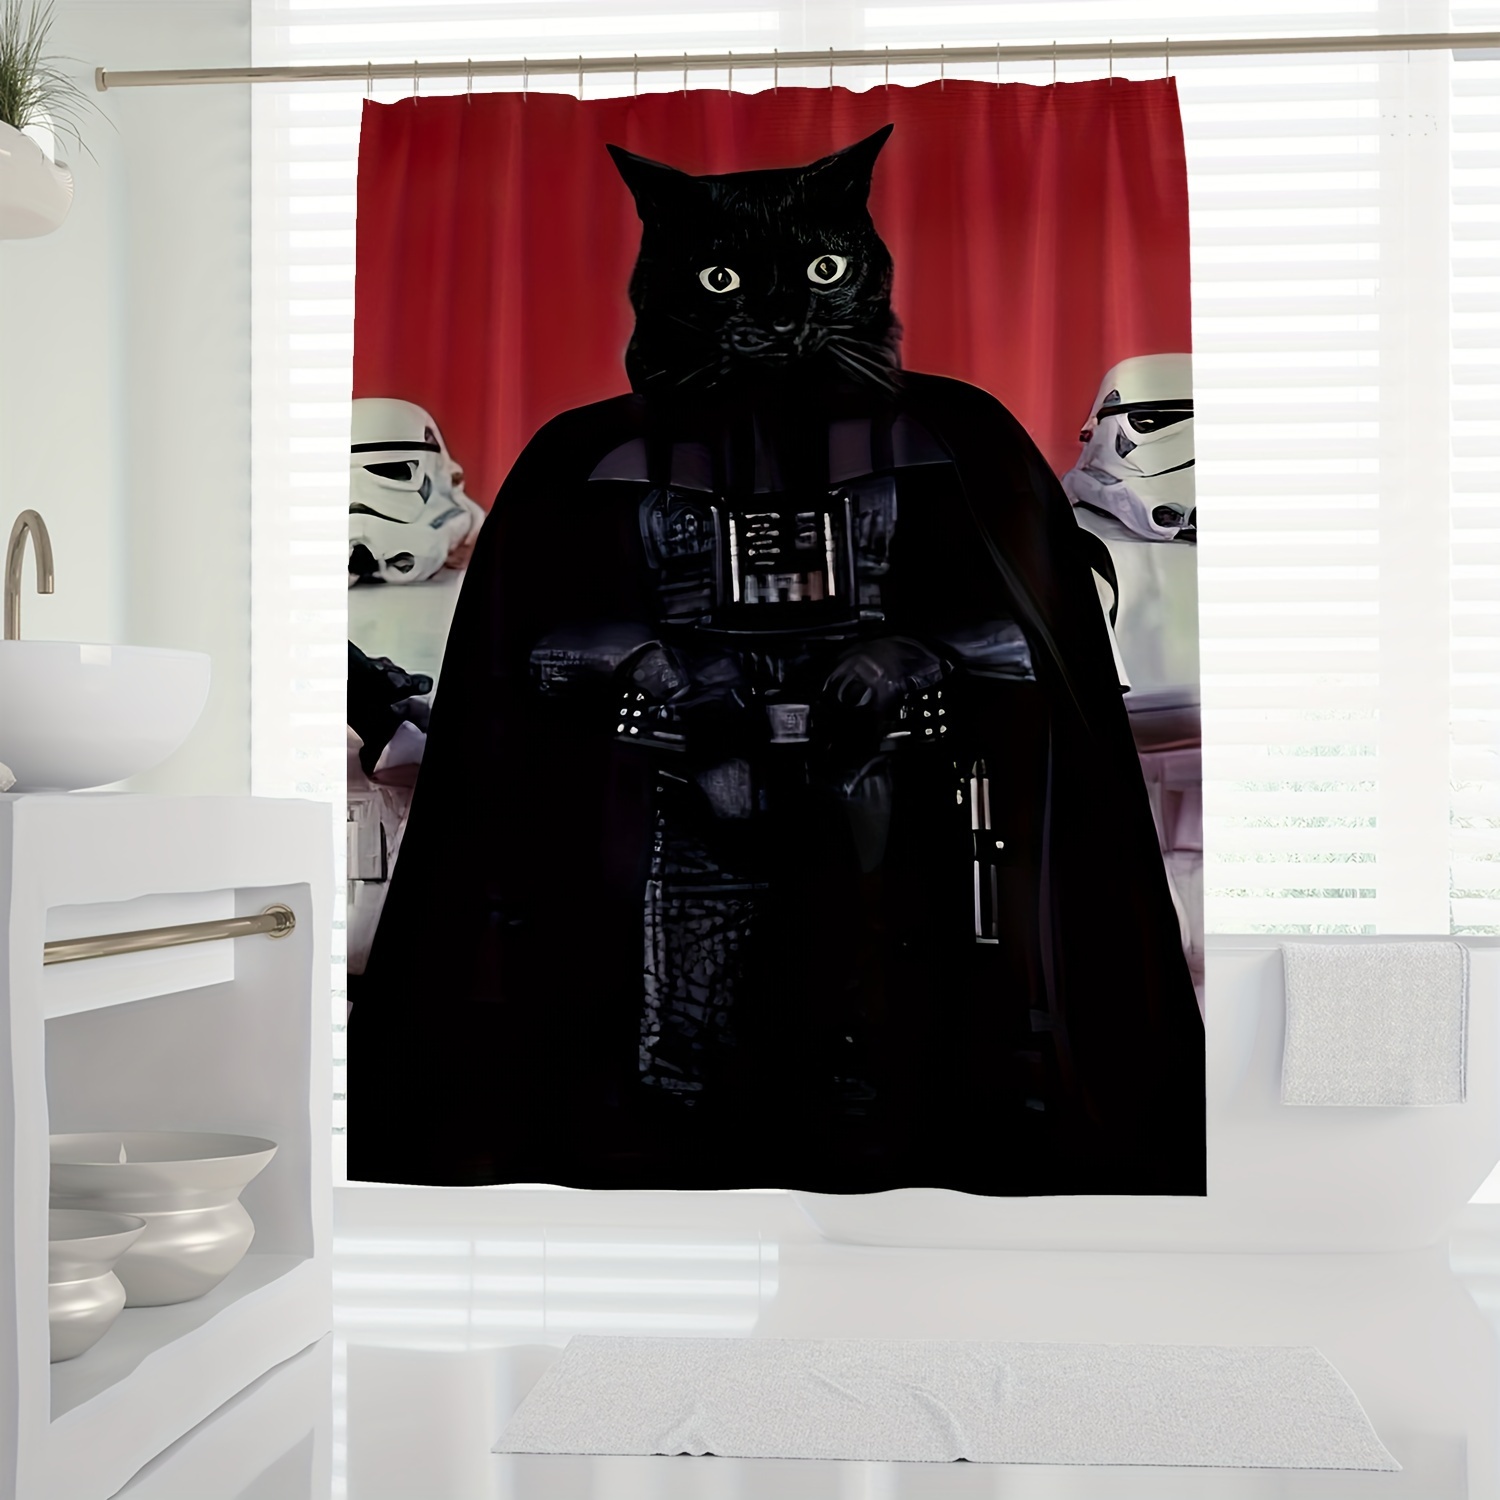 

1pc Parody Black Warrior Cat Shower Curtain, Fun Art Spoof, Bathroom Digital Print Curtain, Waterproof, Mold Resistant, 70.87inx70.87in/78.7in*70.87in